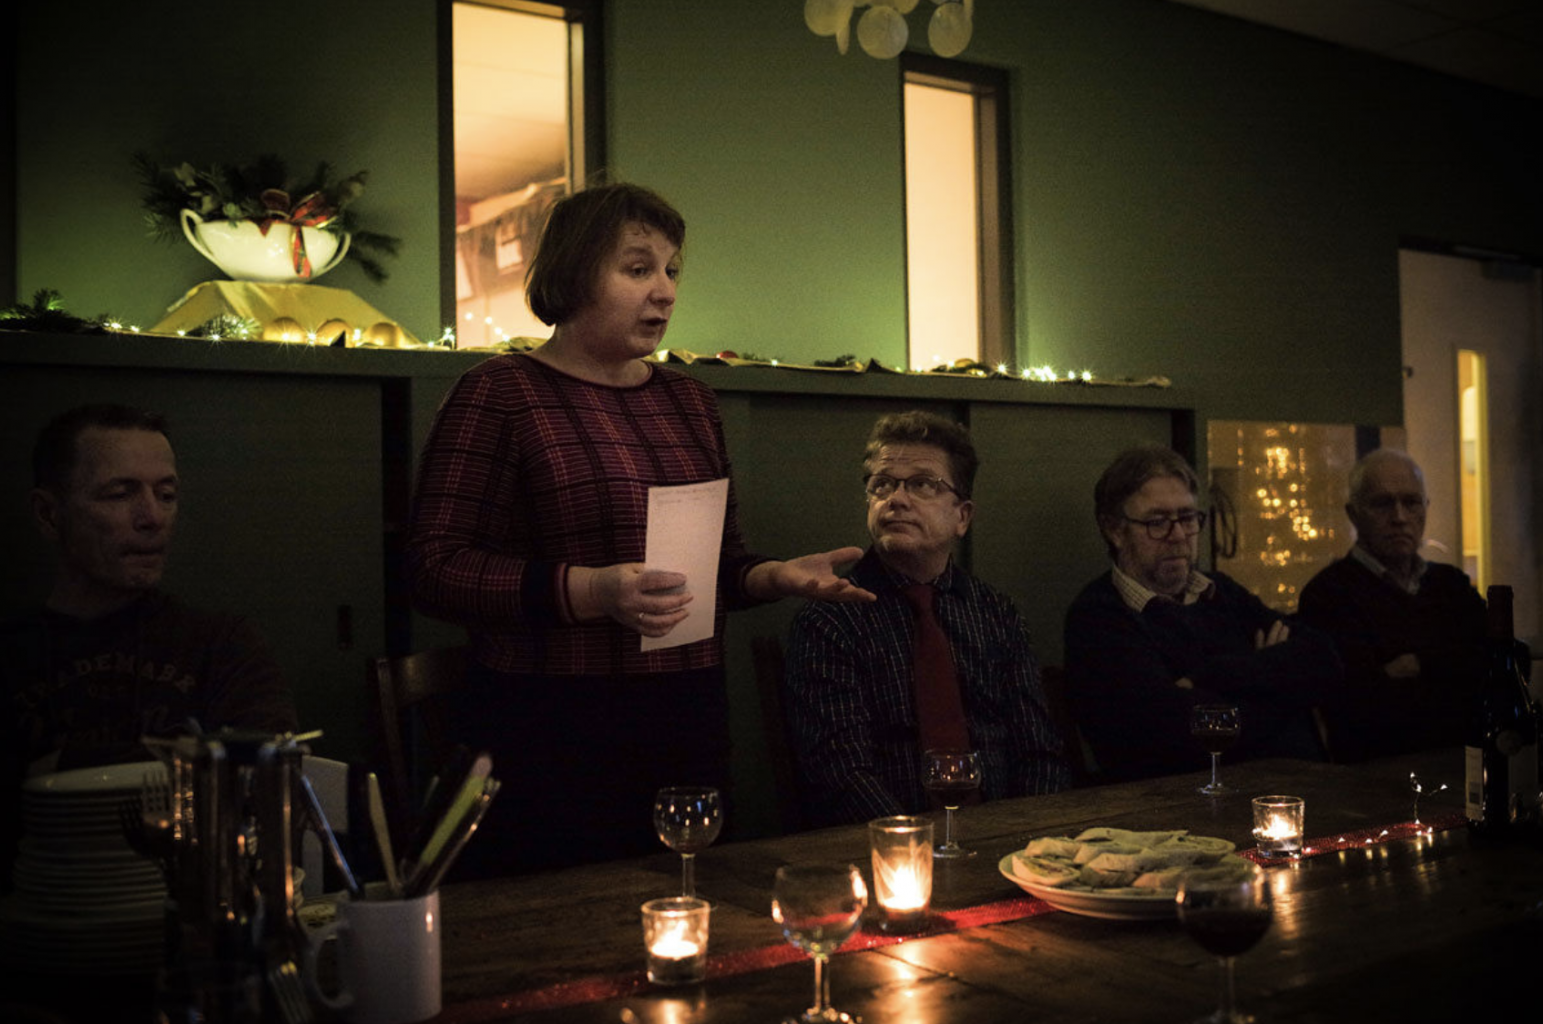 Louba leest een gedicht voor tijdens de Kerstviering in Herberg Haverleij